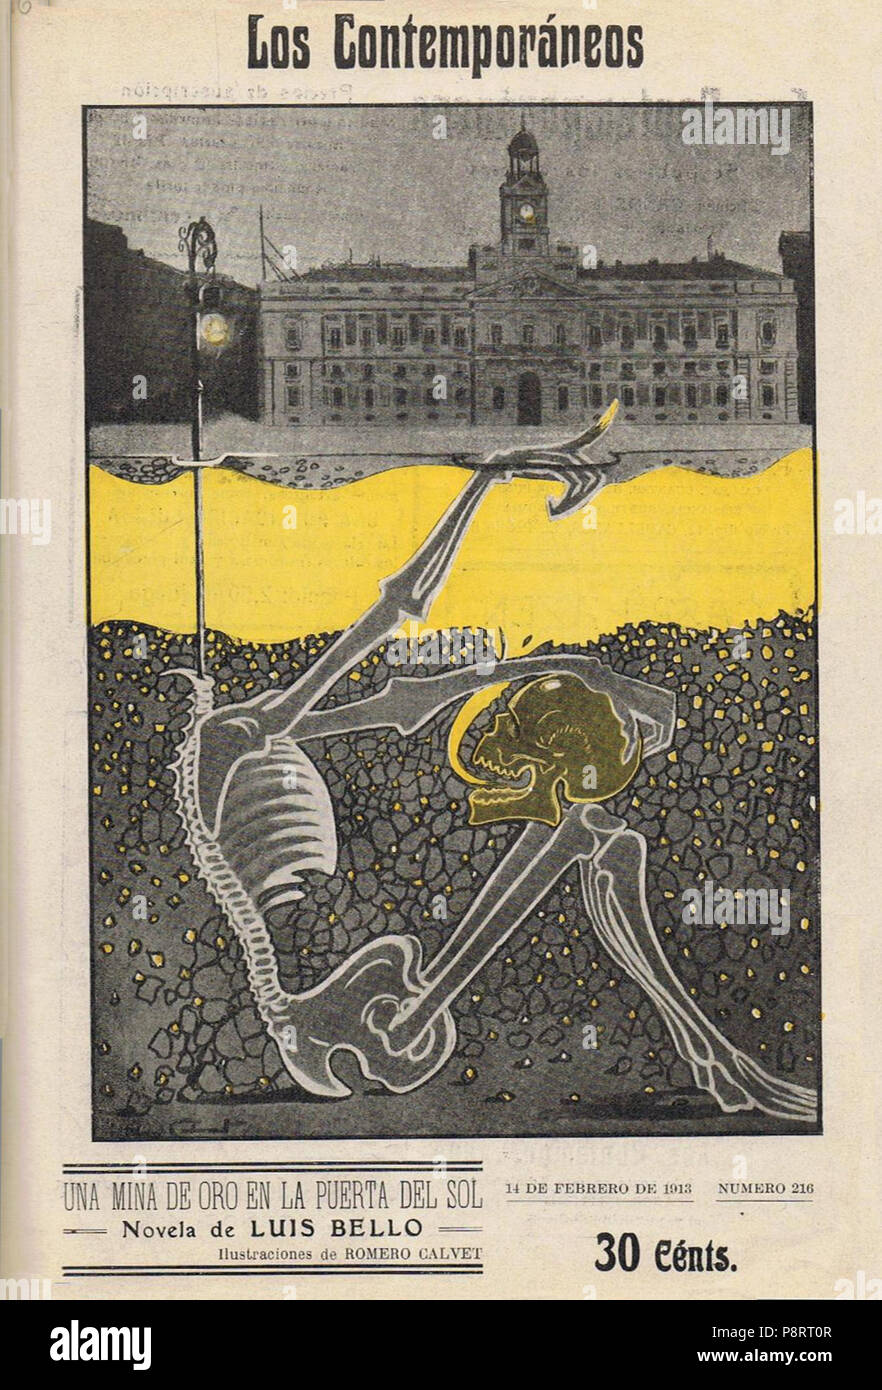 16 1913-02-14, Los Contemporáneos, Una mina de oro en la Puerta del Sol, novela de Luis Bello, ilustraciones de Romero Calvet Stock Photo